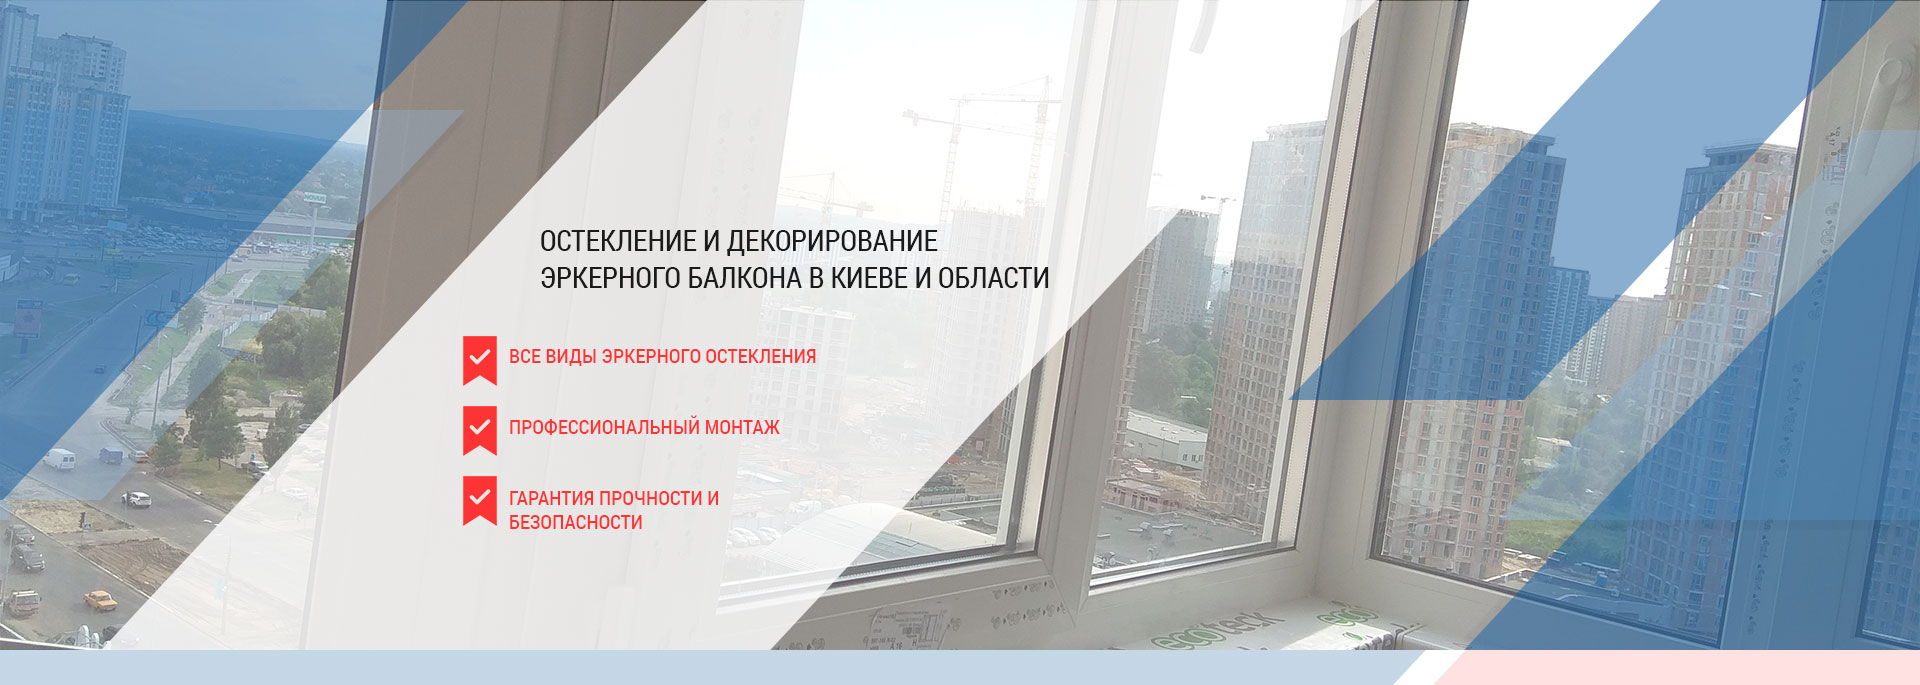 Эркерный балкон - остекление и монтаж в Киеве